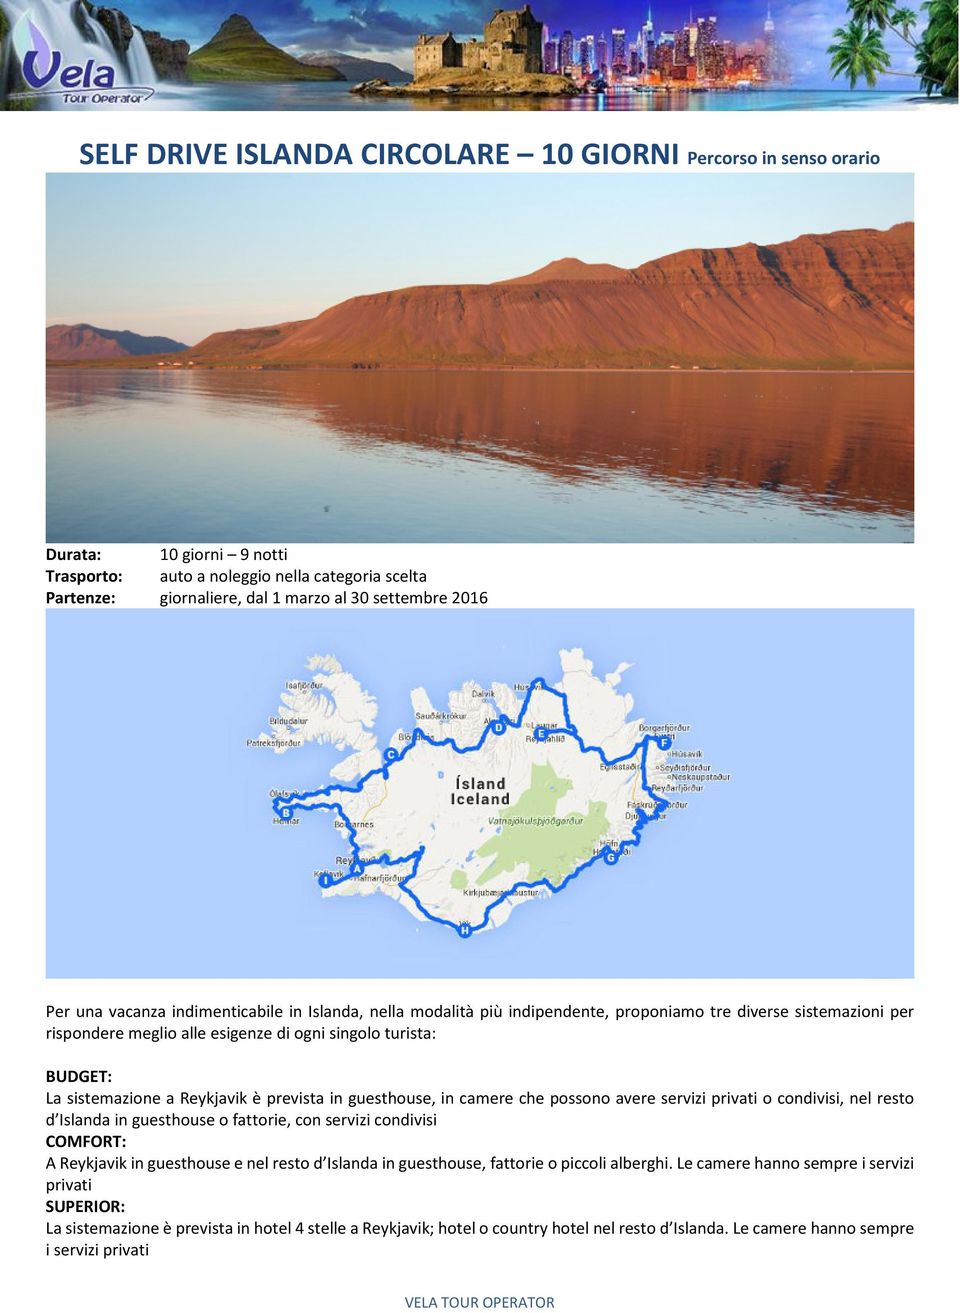 Reykjavik è prevista in guesthouse, in camere che possono avere servizi privati o condivisi, nel resto d Islanda in guesthouse o fattorie, con servizi condivisi COMFORT: A Reykjavik in guesthouse e